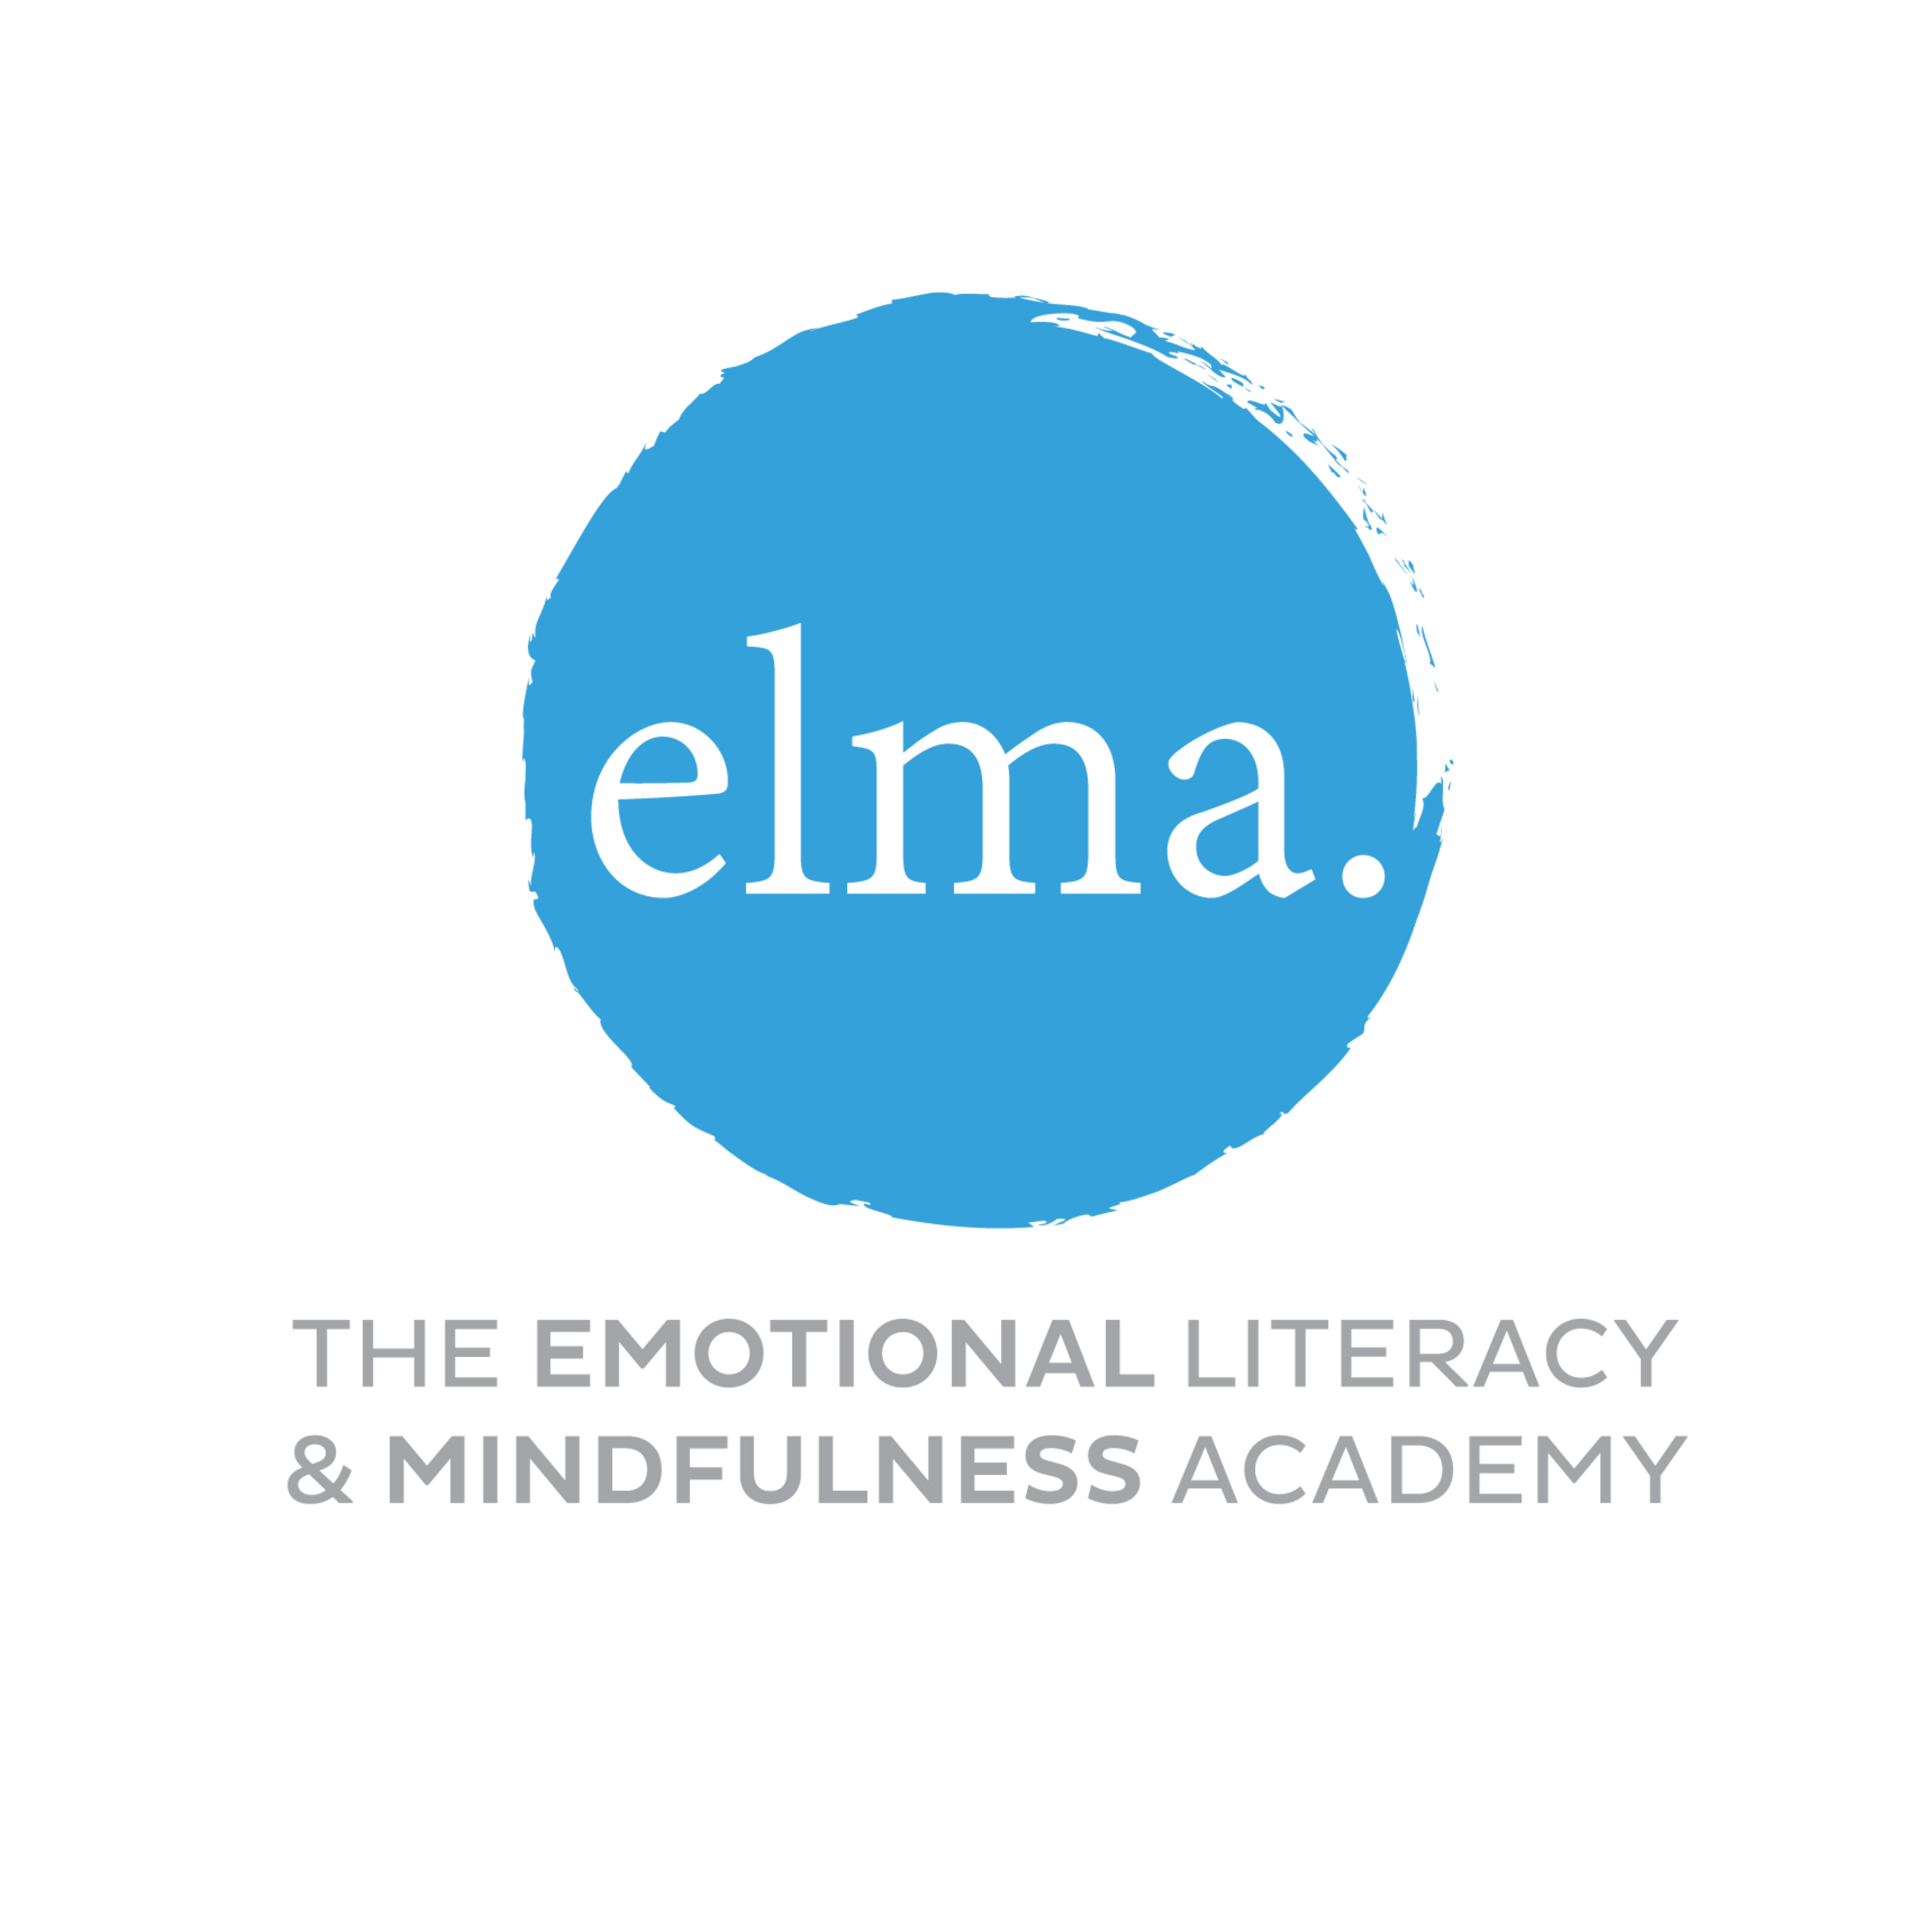 Elma Education